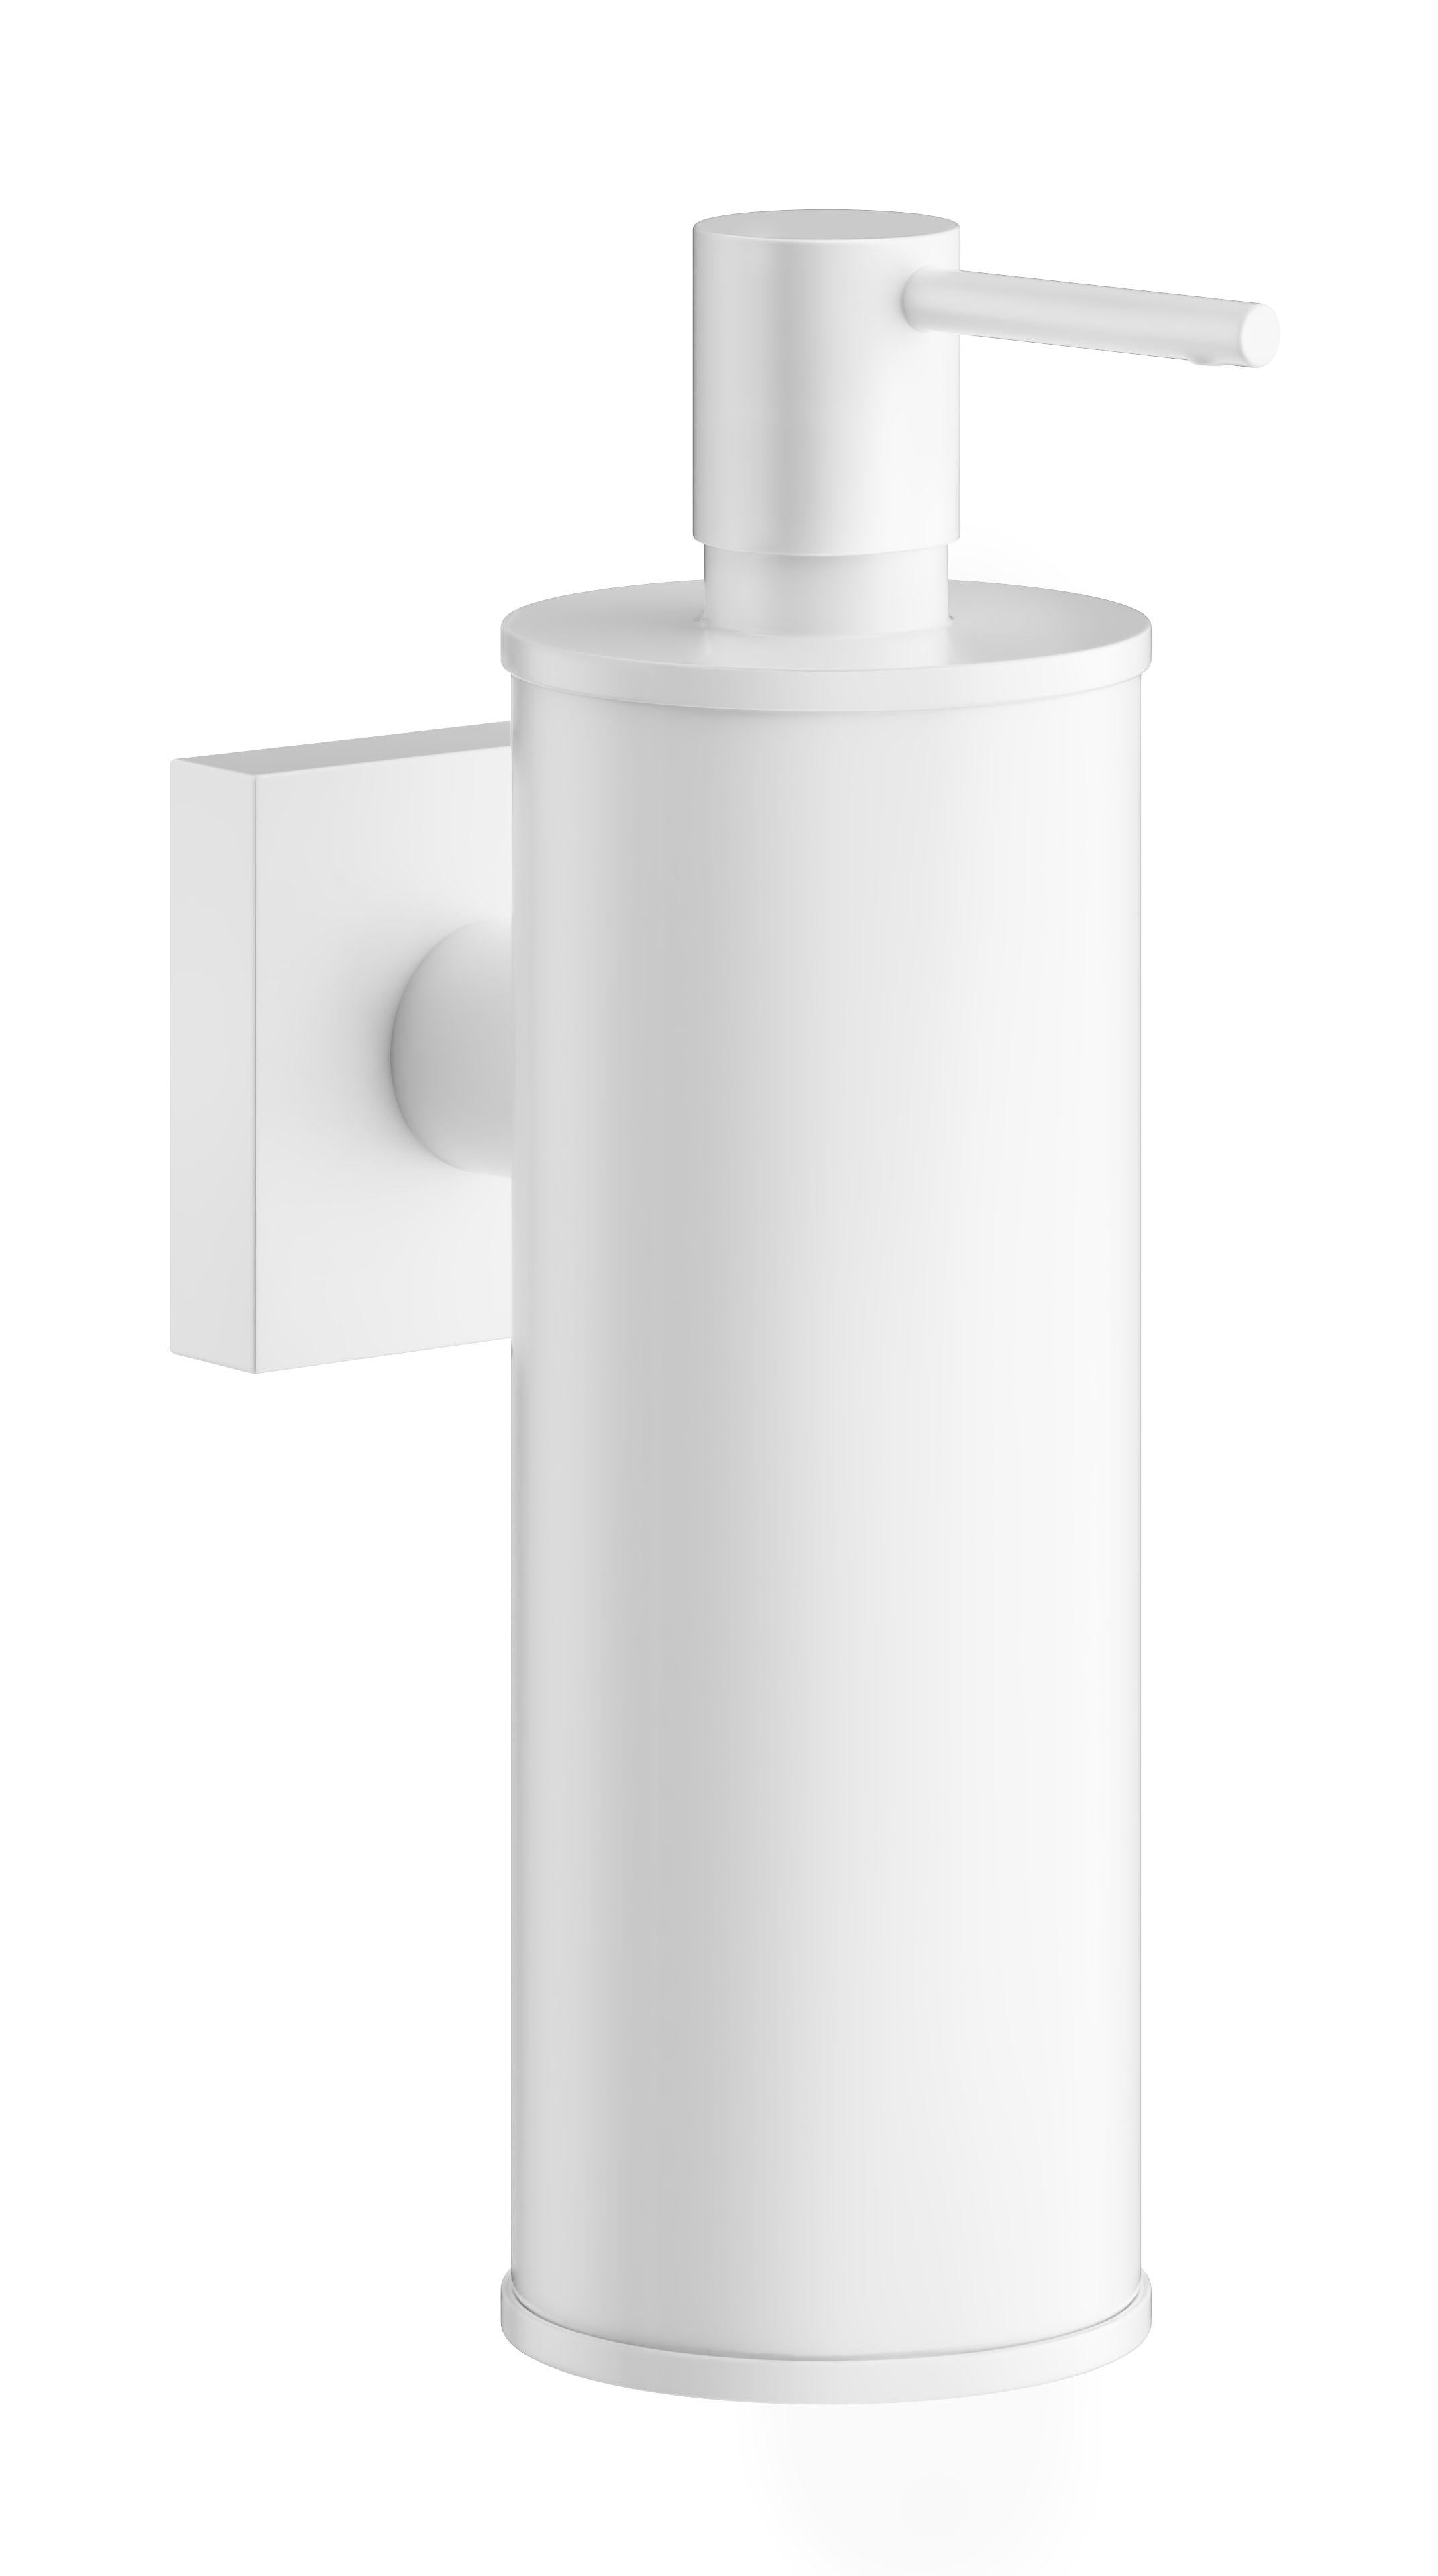 Smedbo House Soap Dispenser